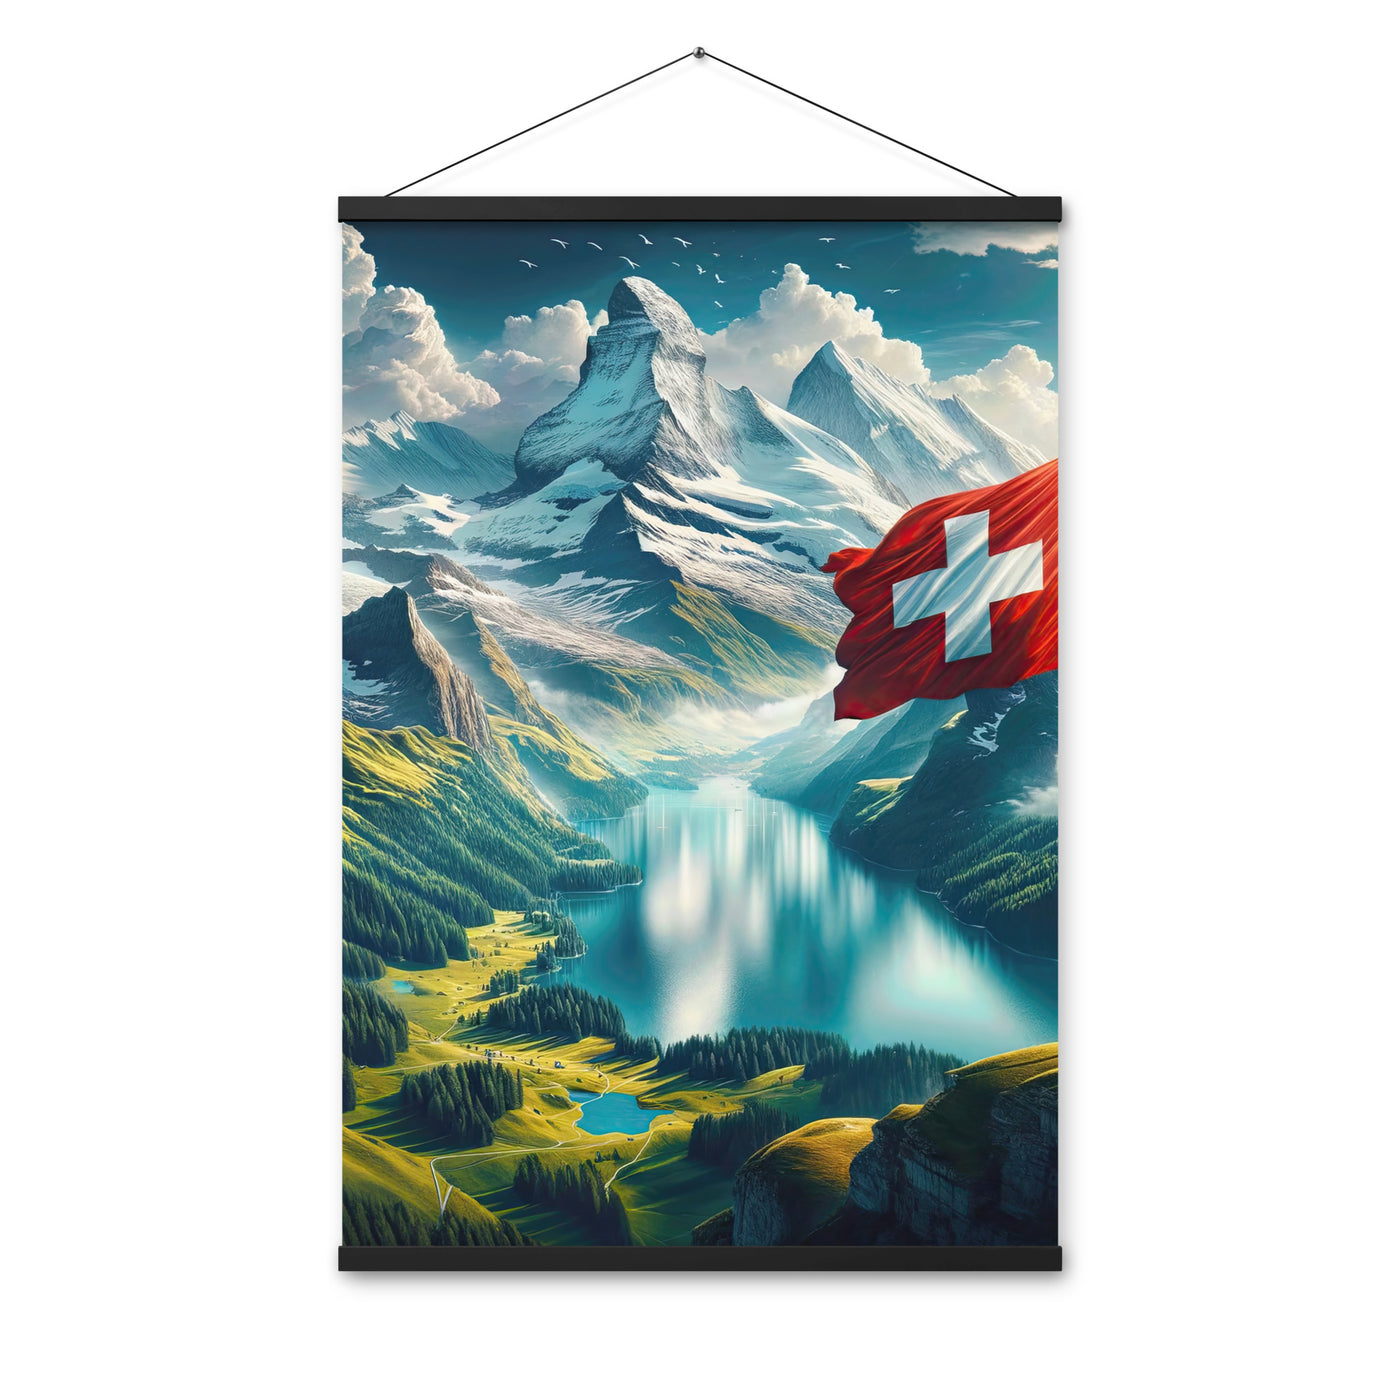 Ultraepische, fotorealistische Darstellung der Schweizer Alpenlandschaft mit Schweizer Flagge - Enhanced Matte Paper Poster With Hanger berge xxx yyy zzz 61 x 91.4 cm